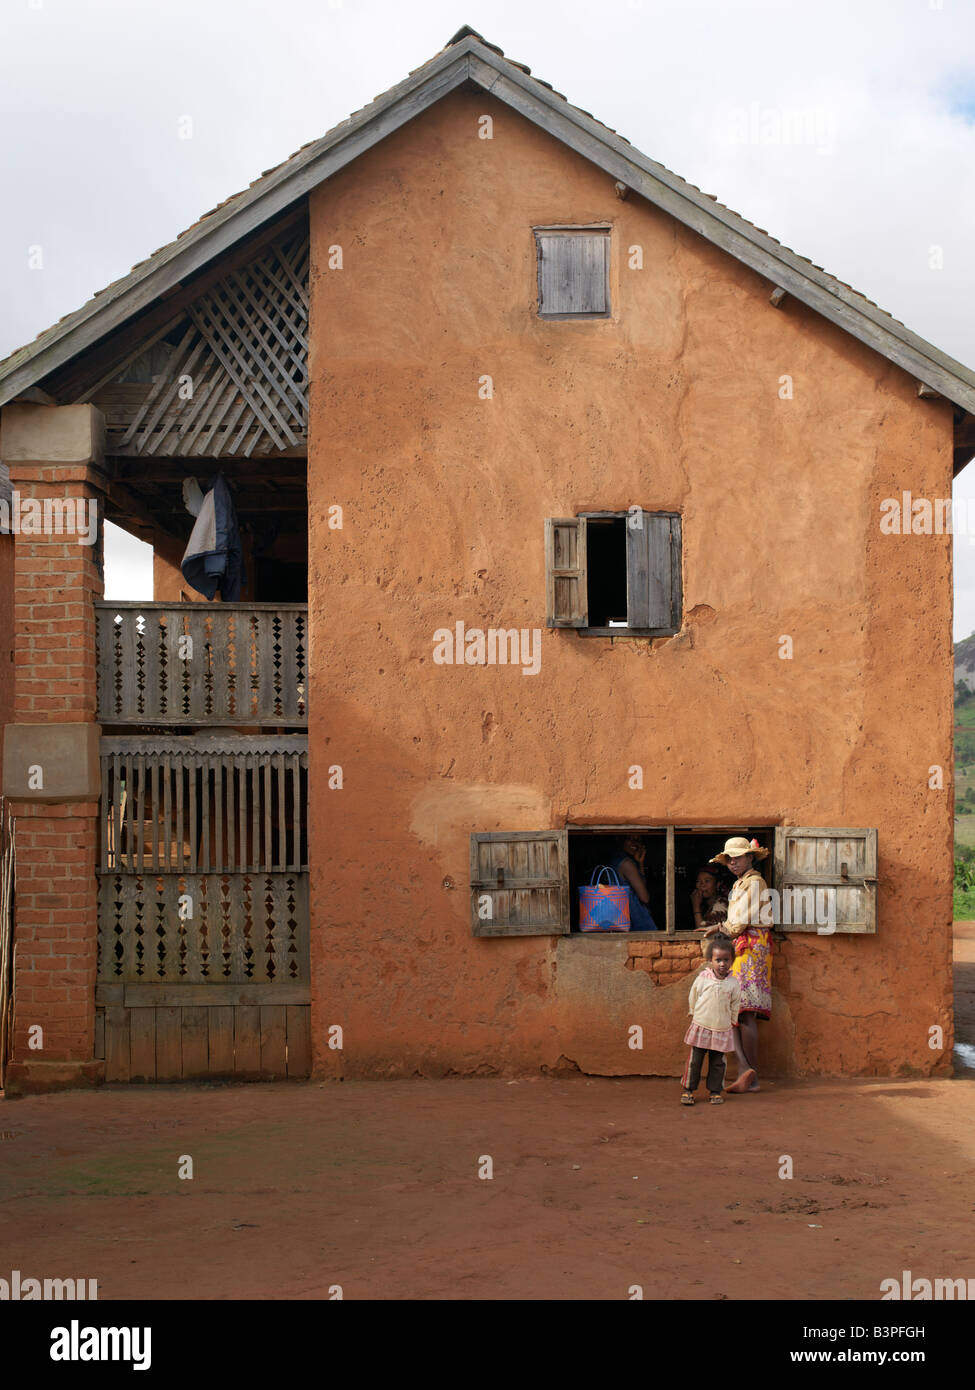 Madagascar, Southern Highlands, Andohatangona. Il negozio del villaggio in un affascinante villaggio malgascio della Betsileo persone che vivono a sud-ovest della capitale Antananarivo.La maggior parte delle case costruite dalla Betsileo sono a due piani con cucine e locali di abitazione si trova al primo piano. Quasi tutte dispongono di balconi in legno e alcune sono al di fuori di scale. Il bestiame è spesso mantenuto al piano terra di una casa per una notte.i Betsileo sono operosa gente ed esperto coltivatori di riso. La loro terrazzato e irrigate risaie sono una caratteristica del Madagascar meridionale del paesaggio. Foto Stock